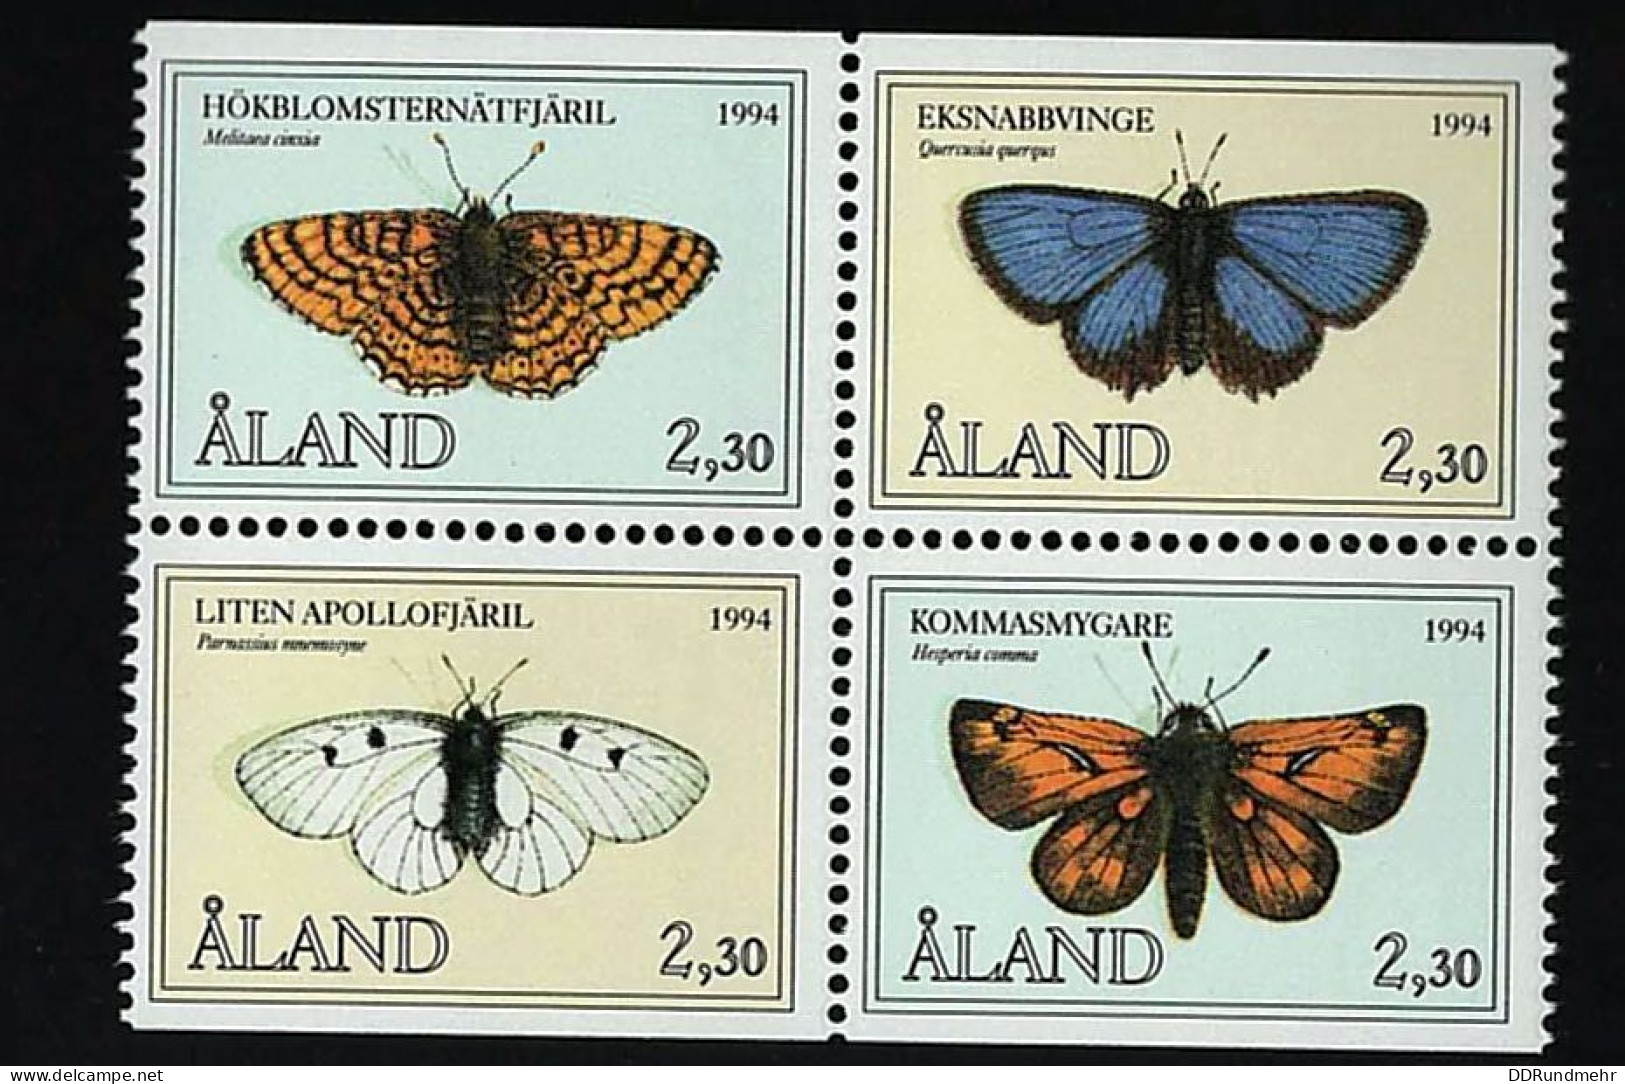 1994 Butterflies Michel AX 82-85 Stamp Number AX 78-81 Yvert Et Tellier AX 82-85 LaPe Finnland AX 82-85 Xx MNH - Aland